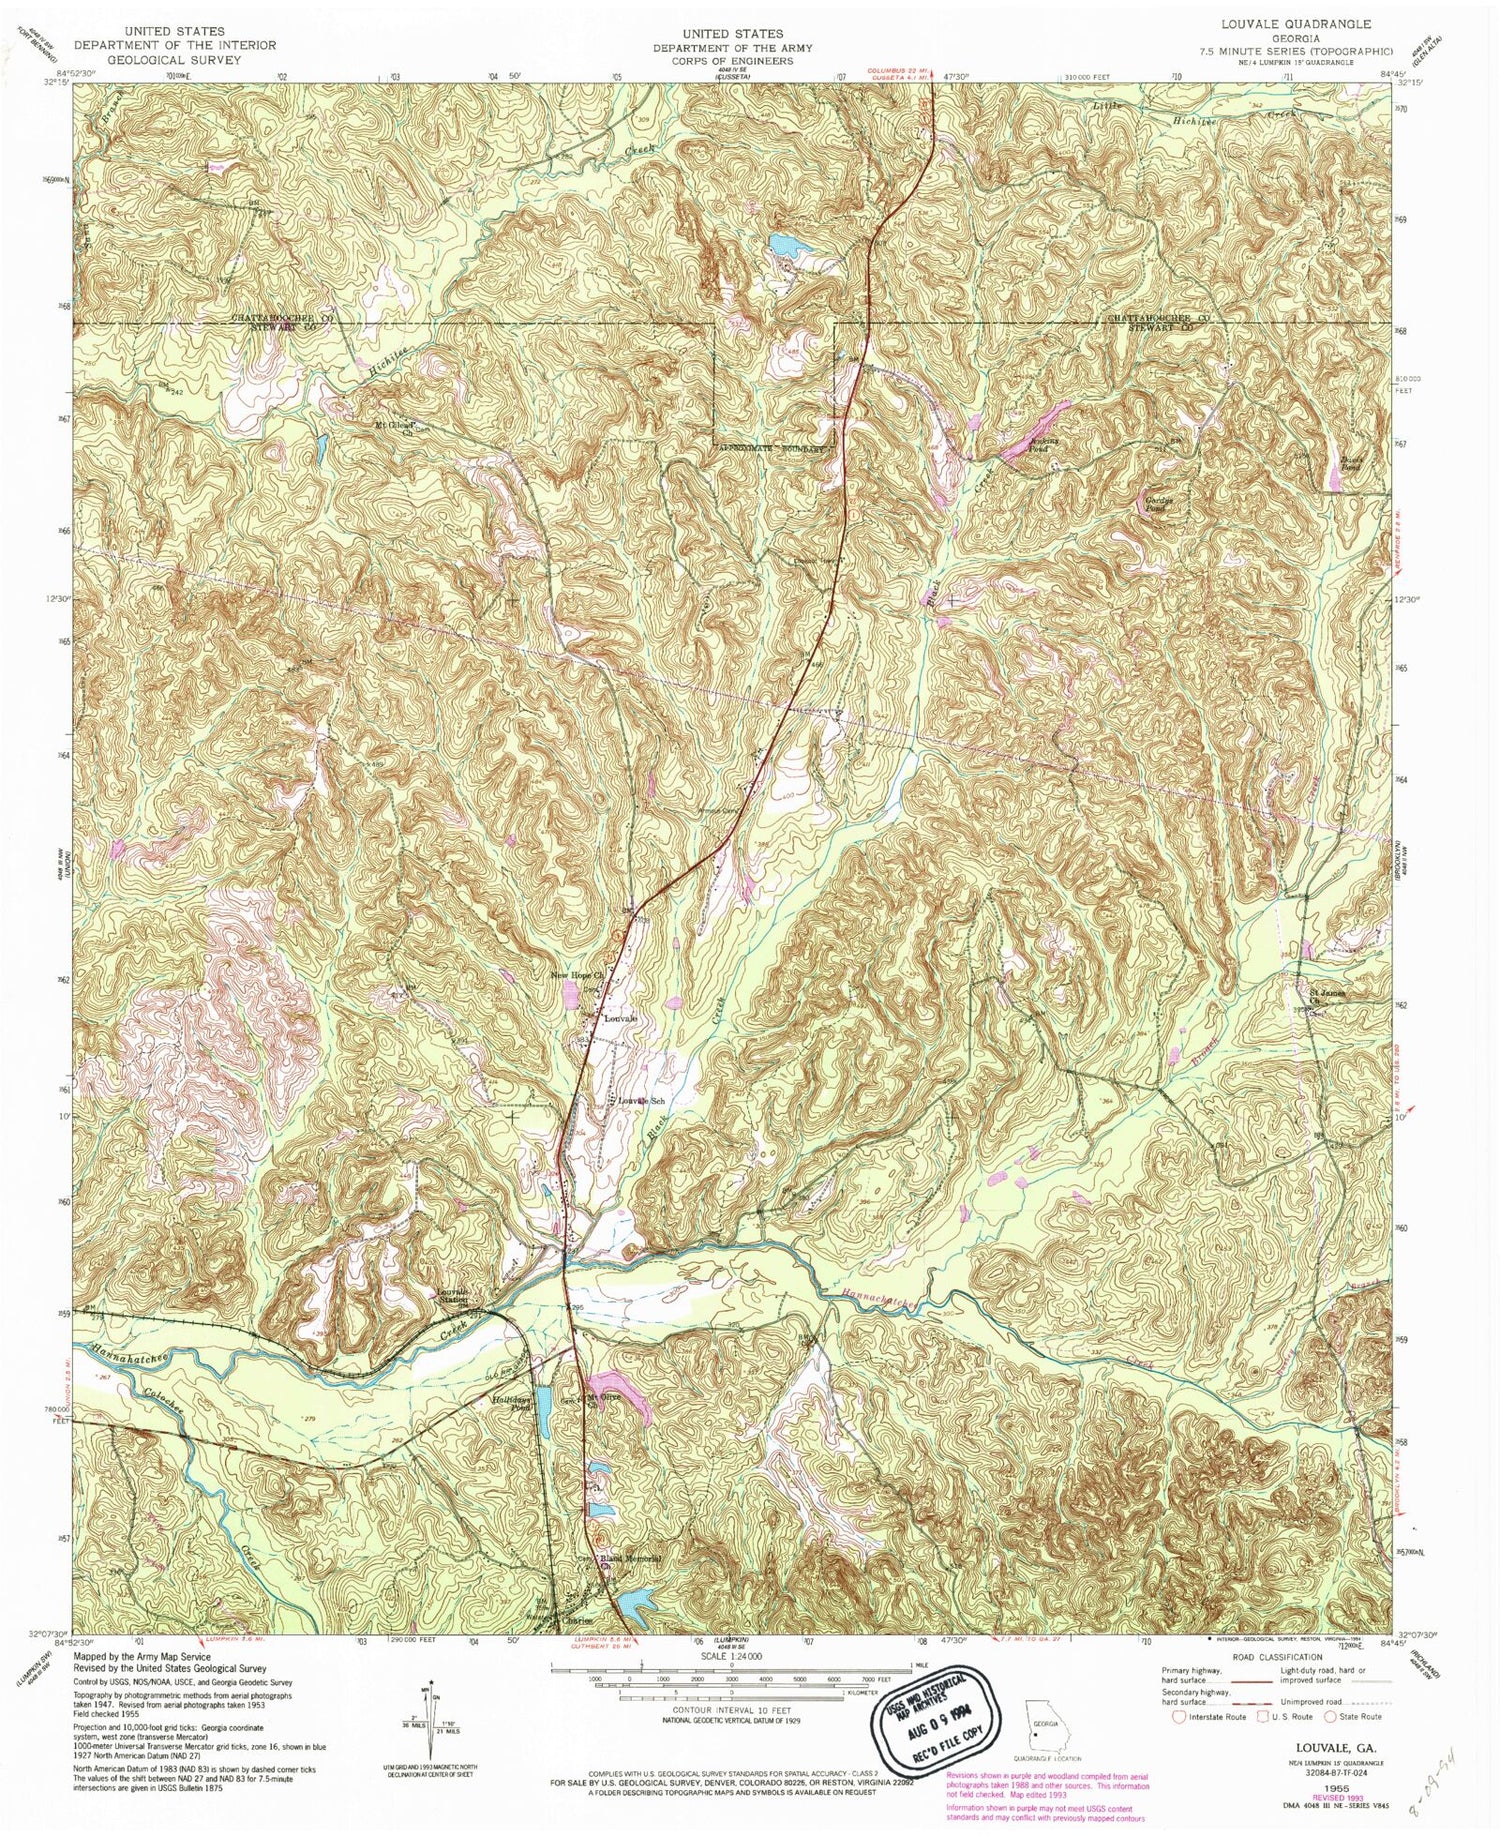 Classic USGS Louvale Georgia 7.5'x7.5' Topo Map Image